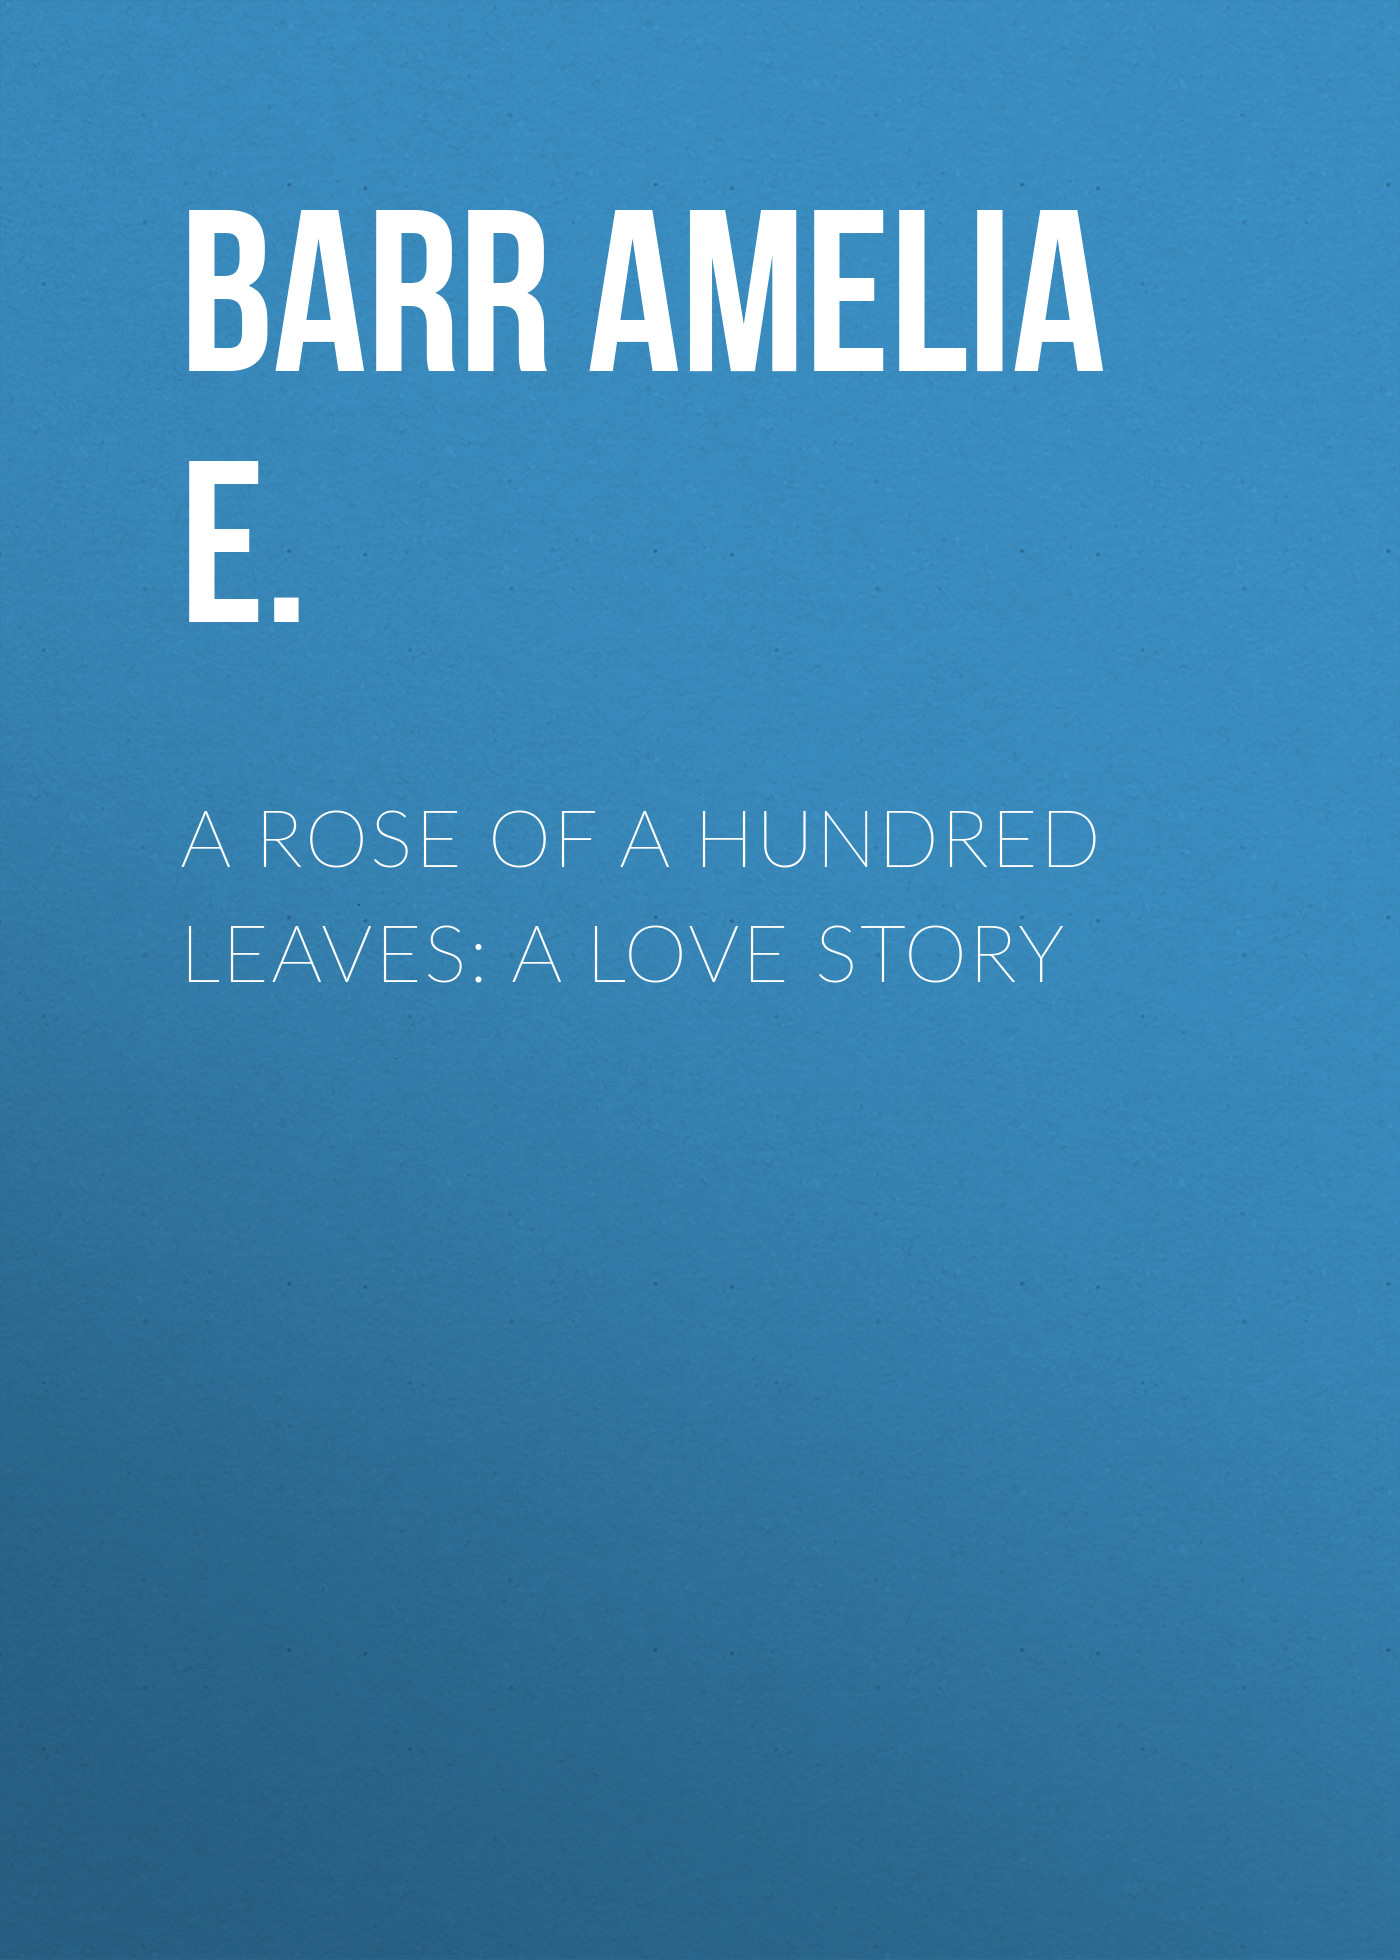 Книга A Rose of a Hundred Leaves: A Love Story из серии , созданная Amelia Barr, может относится к жанру Зарубежная классика, Зарубежные любовные романы. Стоимость электронной книги A Rose of a Hundred Leaves: A Love Story с идентификатором 23147443 составляет 0 руб.